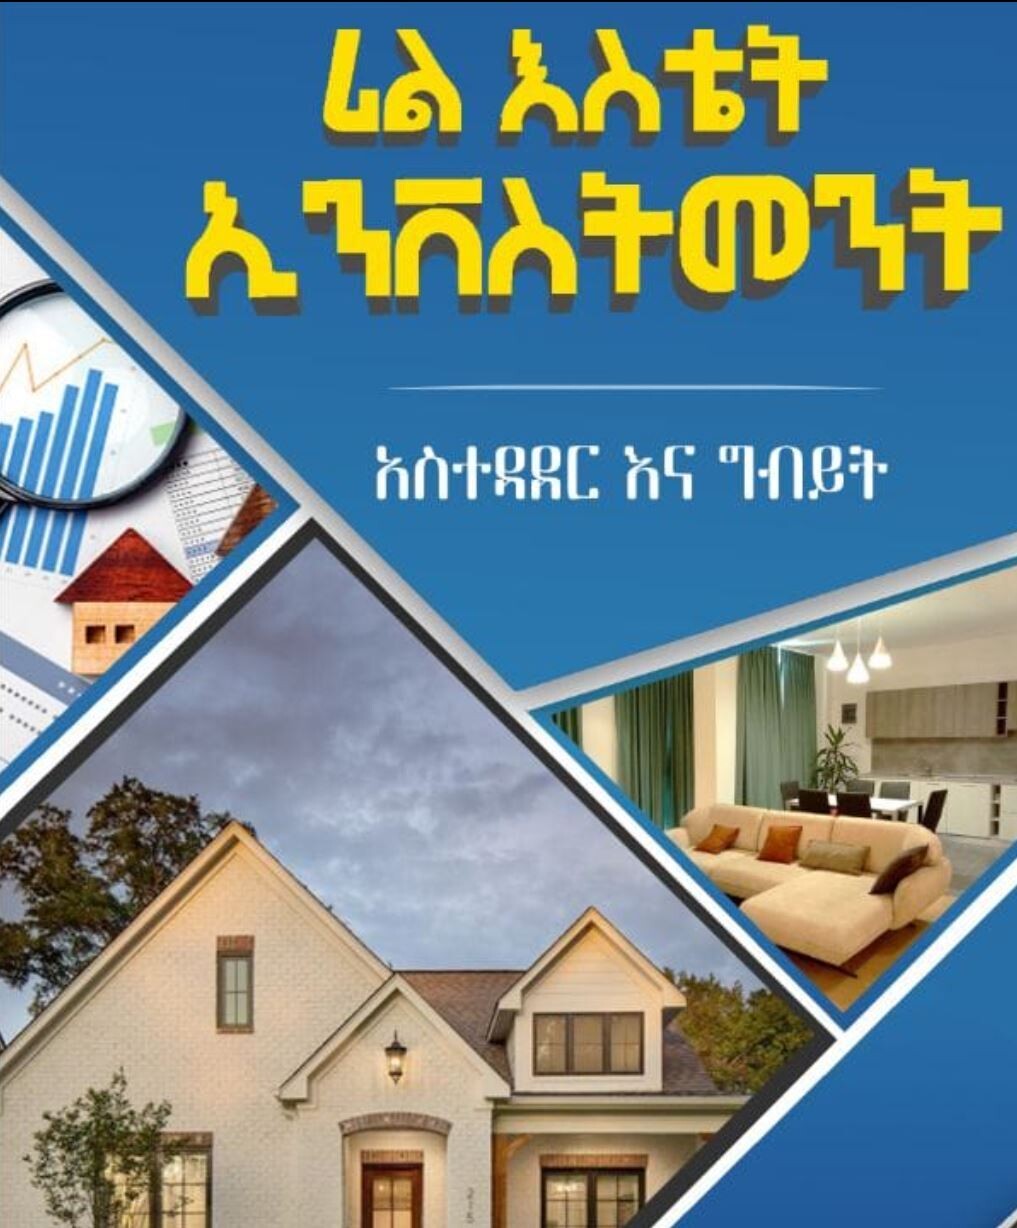 Real Estate Investment (Asitedader Ena Gibiyit)
ሪል እስቴት ኢንቨስትመንት (አስተዳደር እና ግብይት By Desalegn Kebede